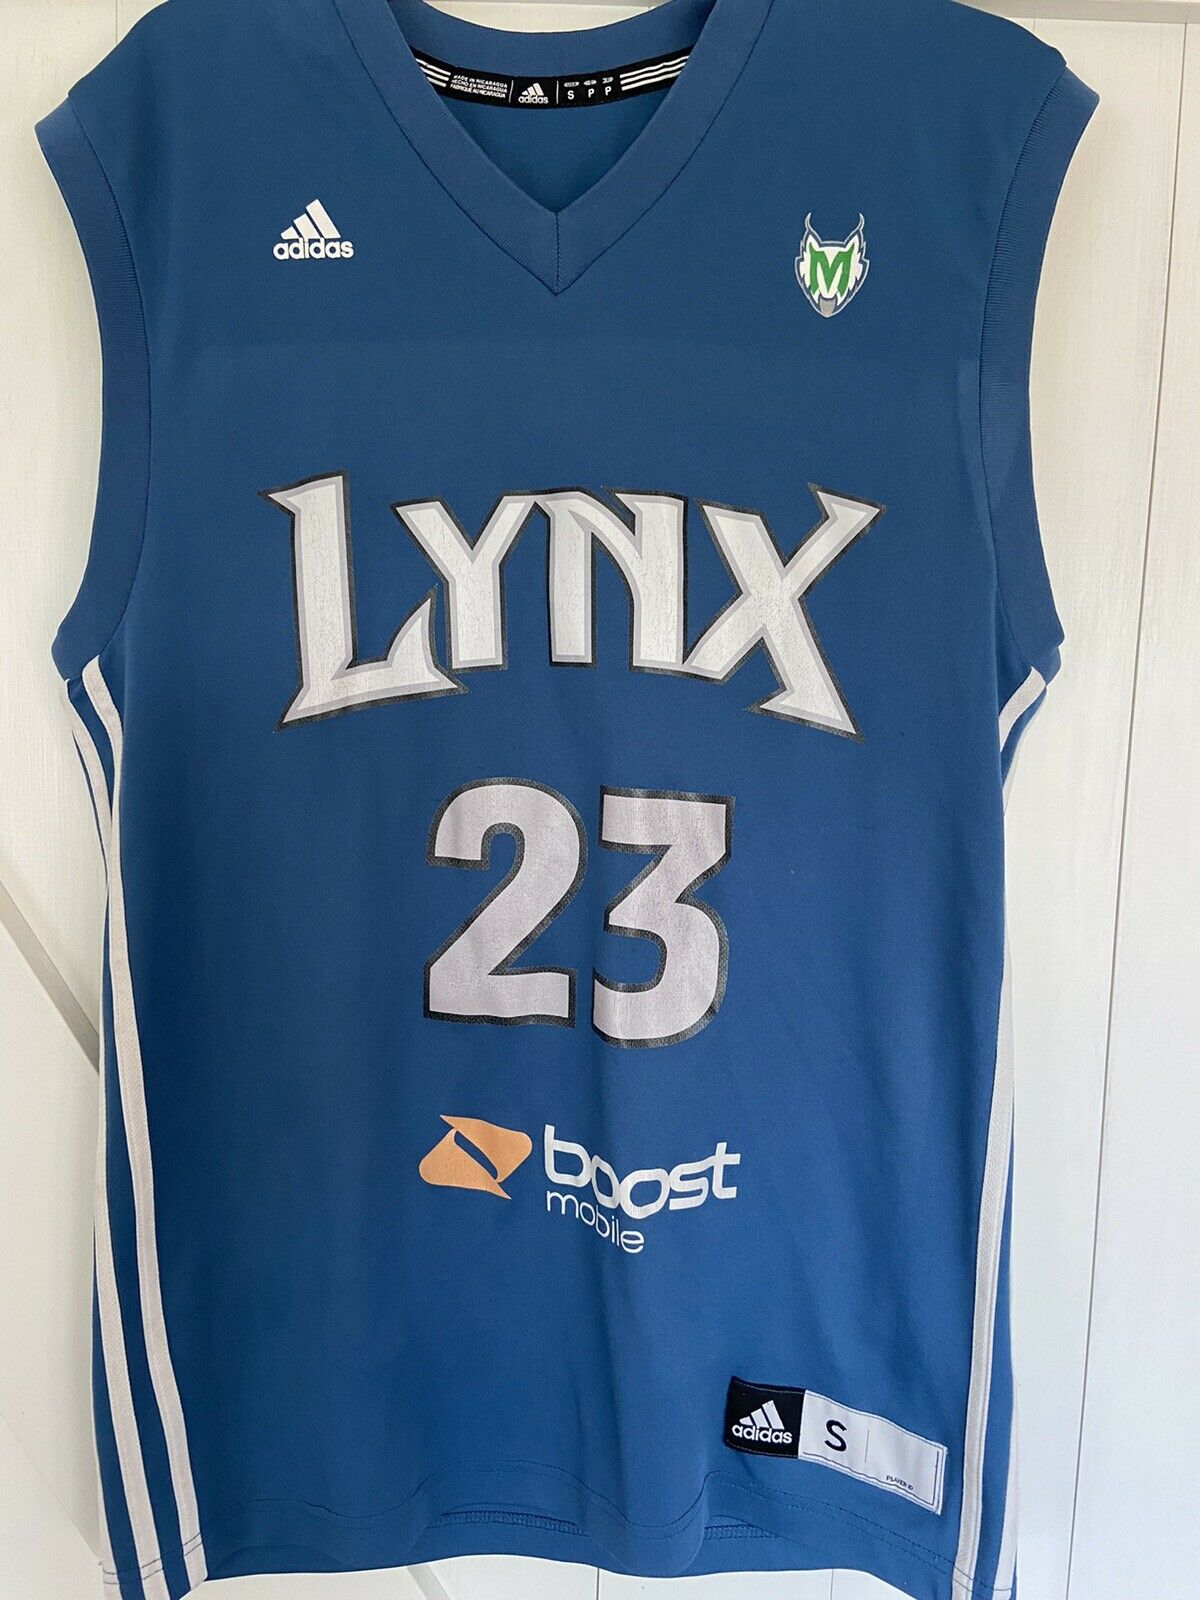 Adidas Minnesota Lynx Maya Moore Wnba Jersey - Size Small Basketball Boost